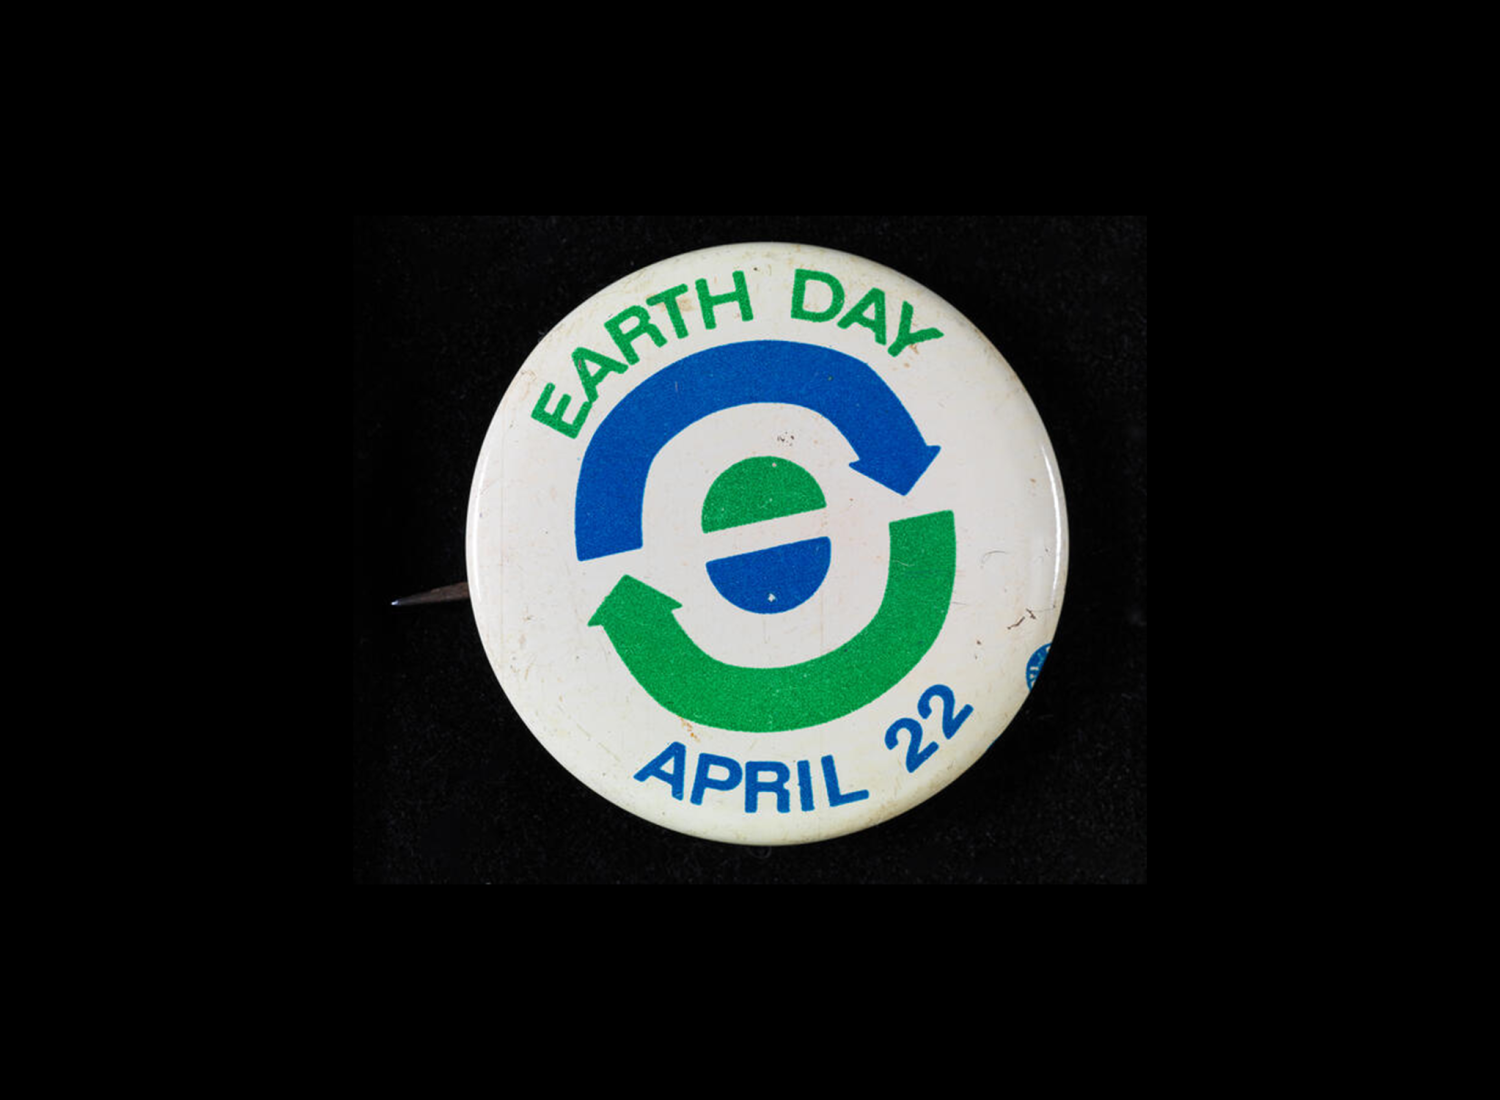 Un botón blanco que dice Día de la Tierra, 22 de abril, con flechas azules y verdes y semicírculos que simbolizan el reciclaje y la tierra.